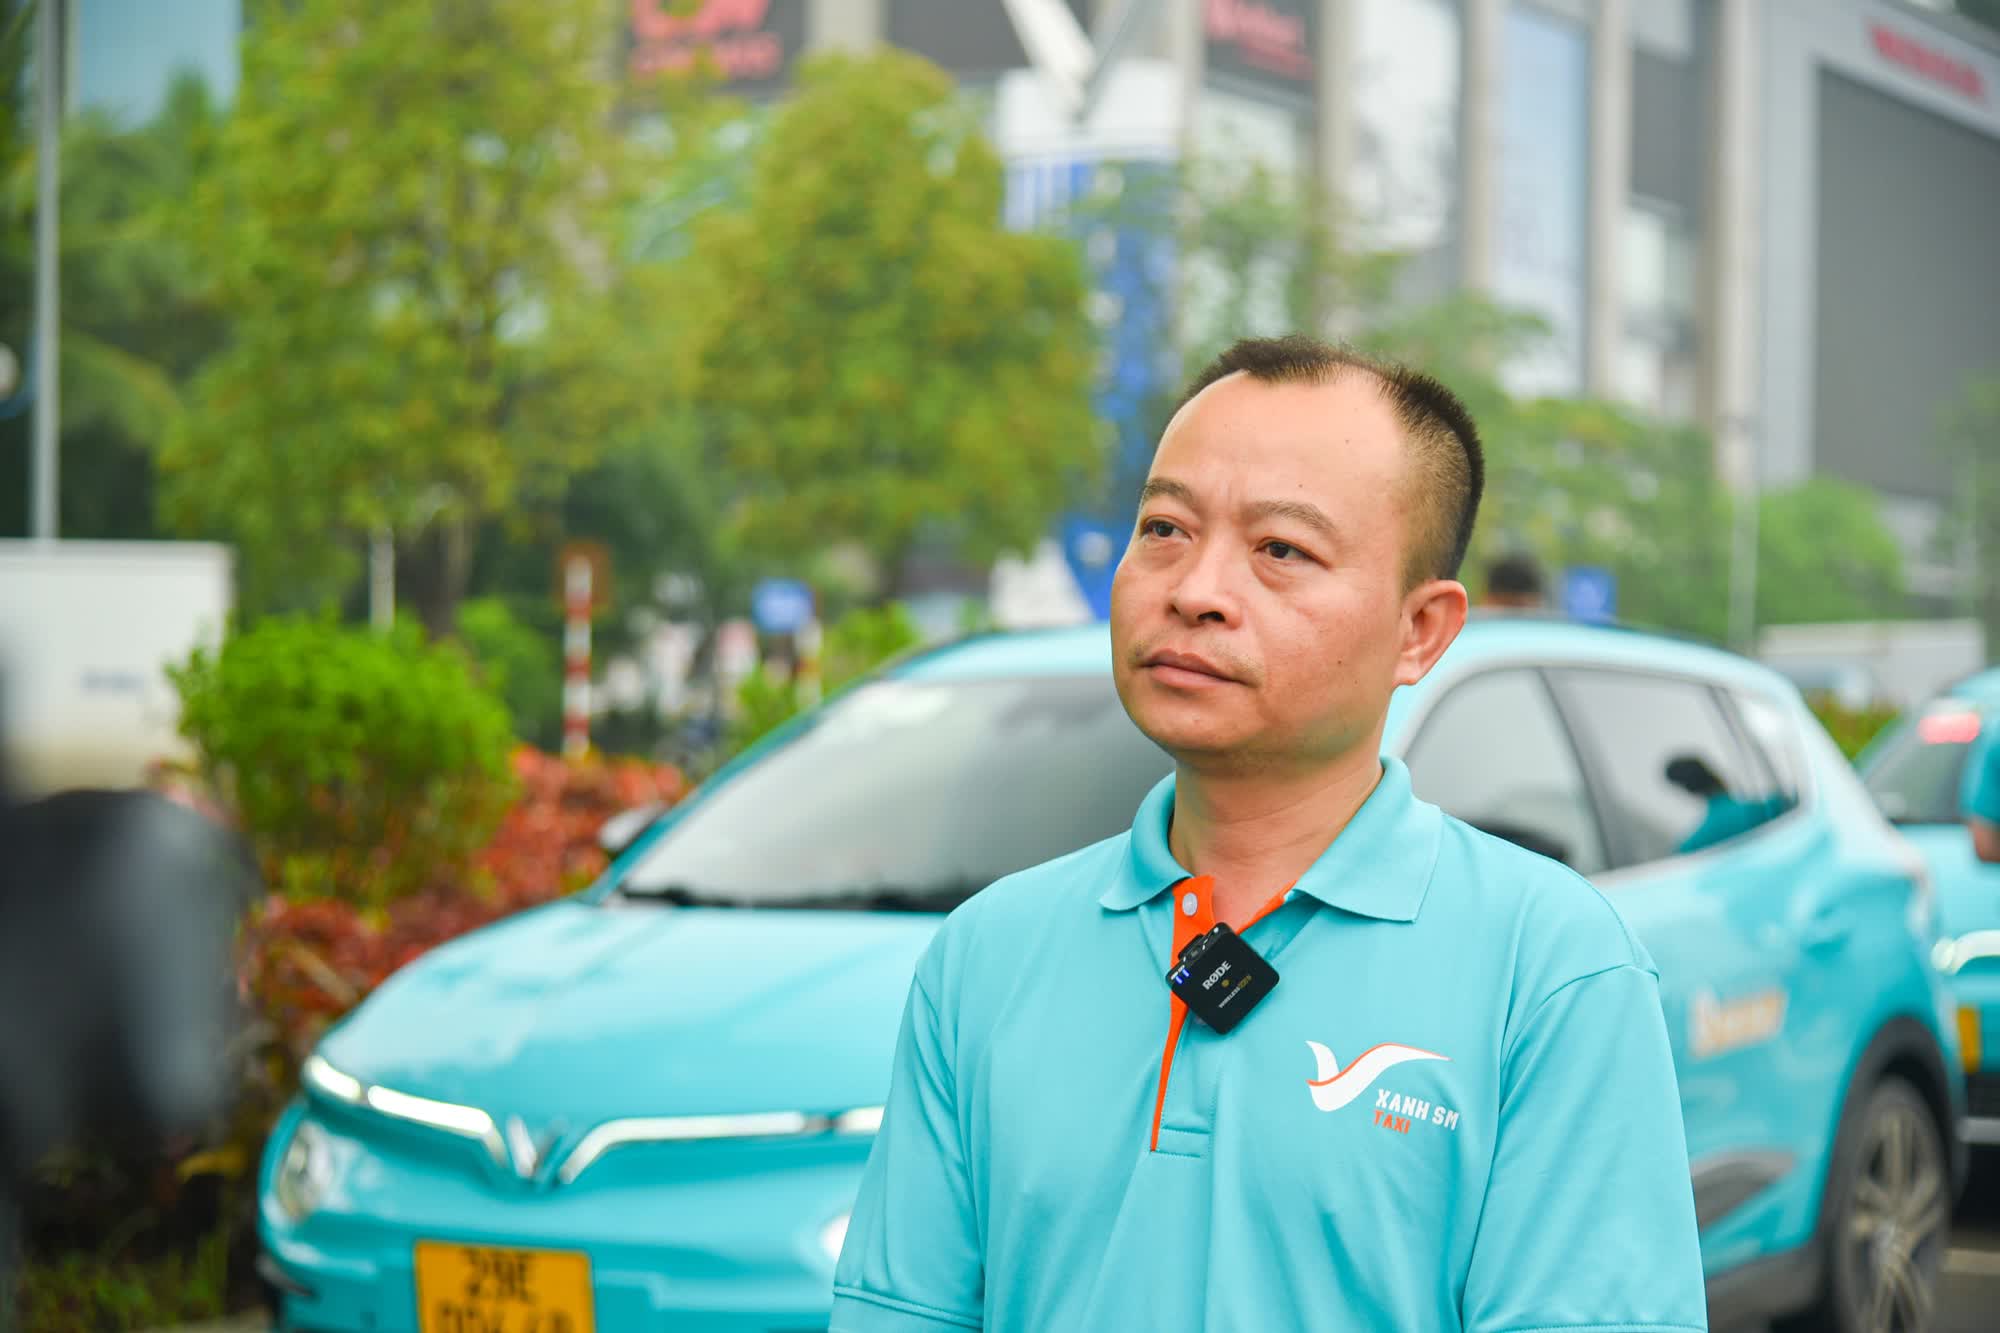 Chạy taxi SM nhanh 'giàu' hơn chạy Grab: Tiết kiệm 700 triệu tiền mua xe, ngày đi 100km kiếm hơn 20 triệu/tháng - Ảnh 2.